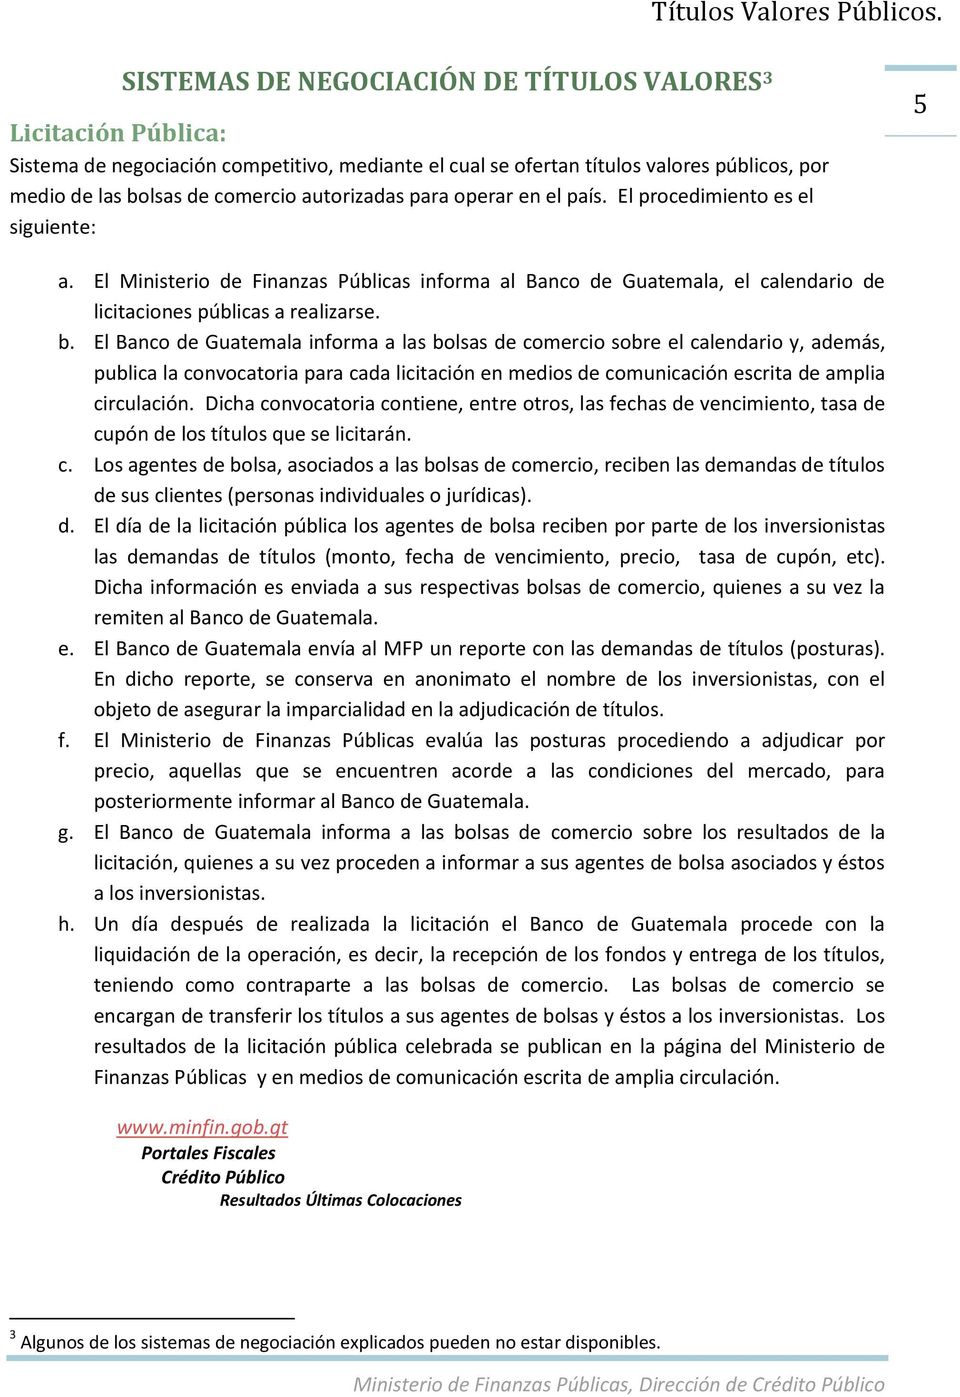 El Banco de Guatemala informa a las bolsas de comercio sobre el calendario y, además, publica la convocatoria para cada licitación en medios de comunicación escrita de amplia circulación.